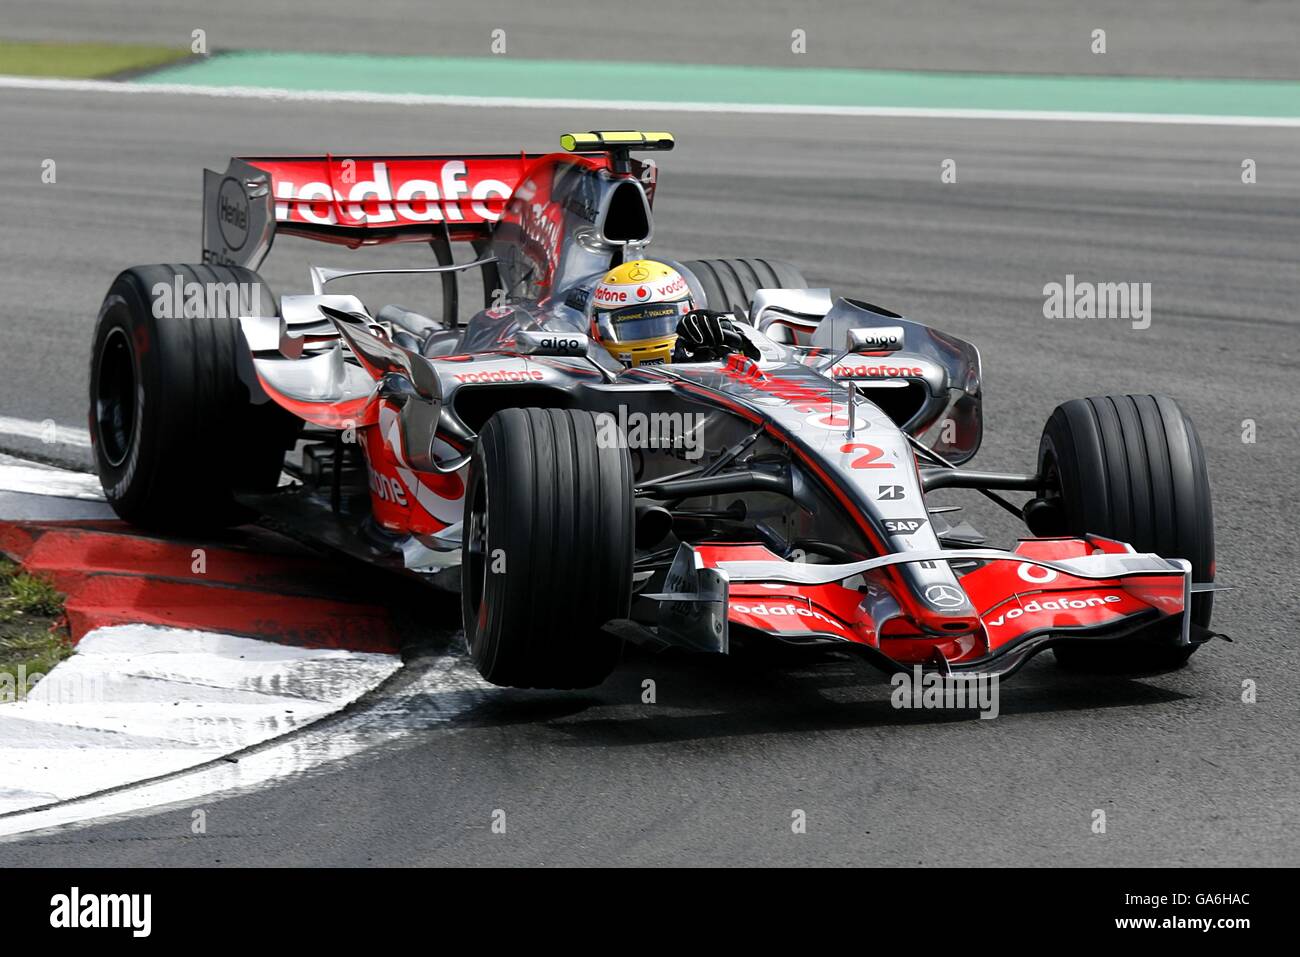 Formel-1-Motorsport - Großer Preis Europas - Rennen - Nürburgring. Lewis Hamilton von McLaren beim Grand Prix der Europäischen Formel 1 auf dem Nürburgring. Stockfoto